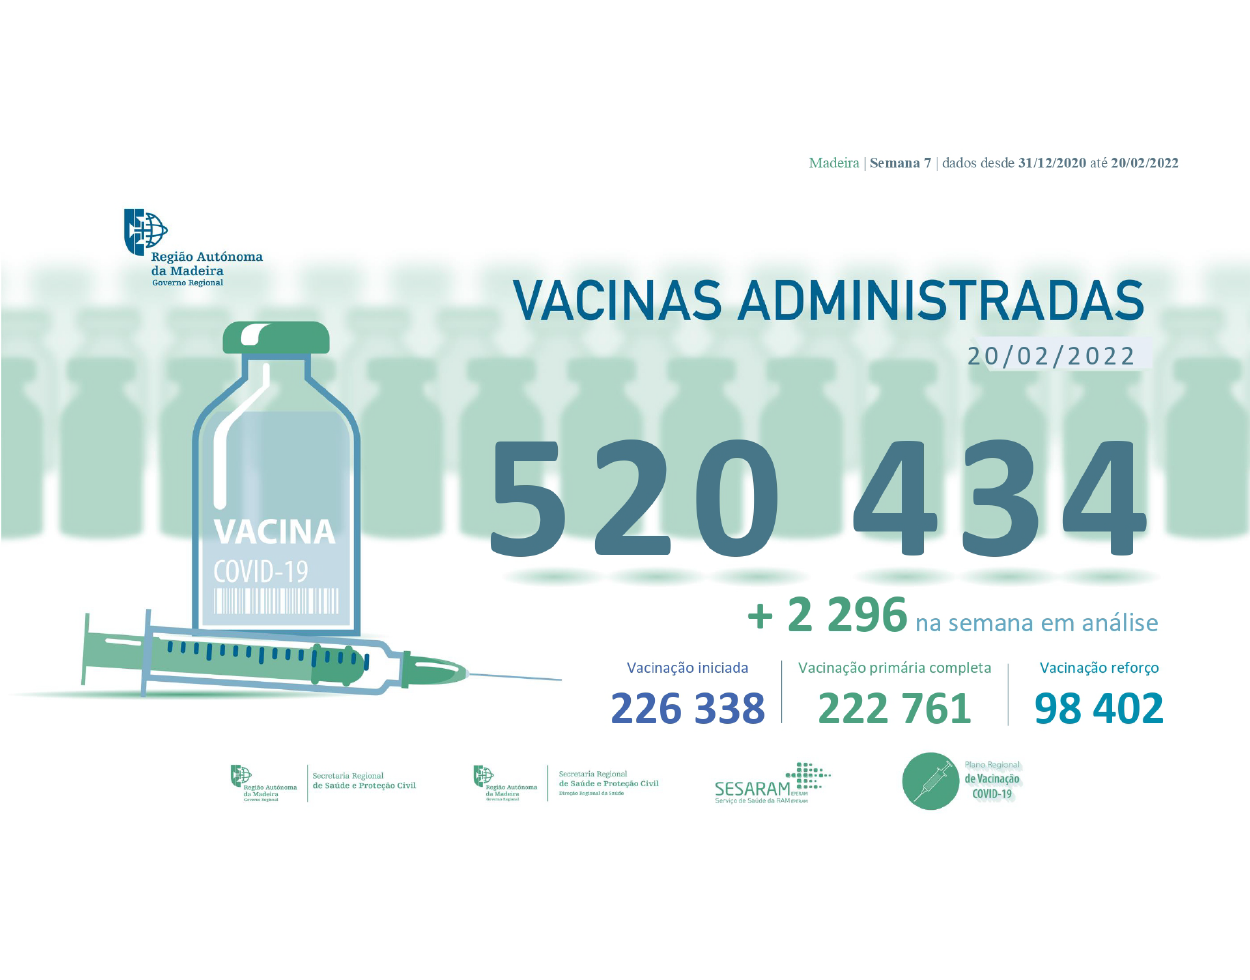 Administradas mais de 520 434 vacinas contra a COVID-19 na RAM